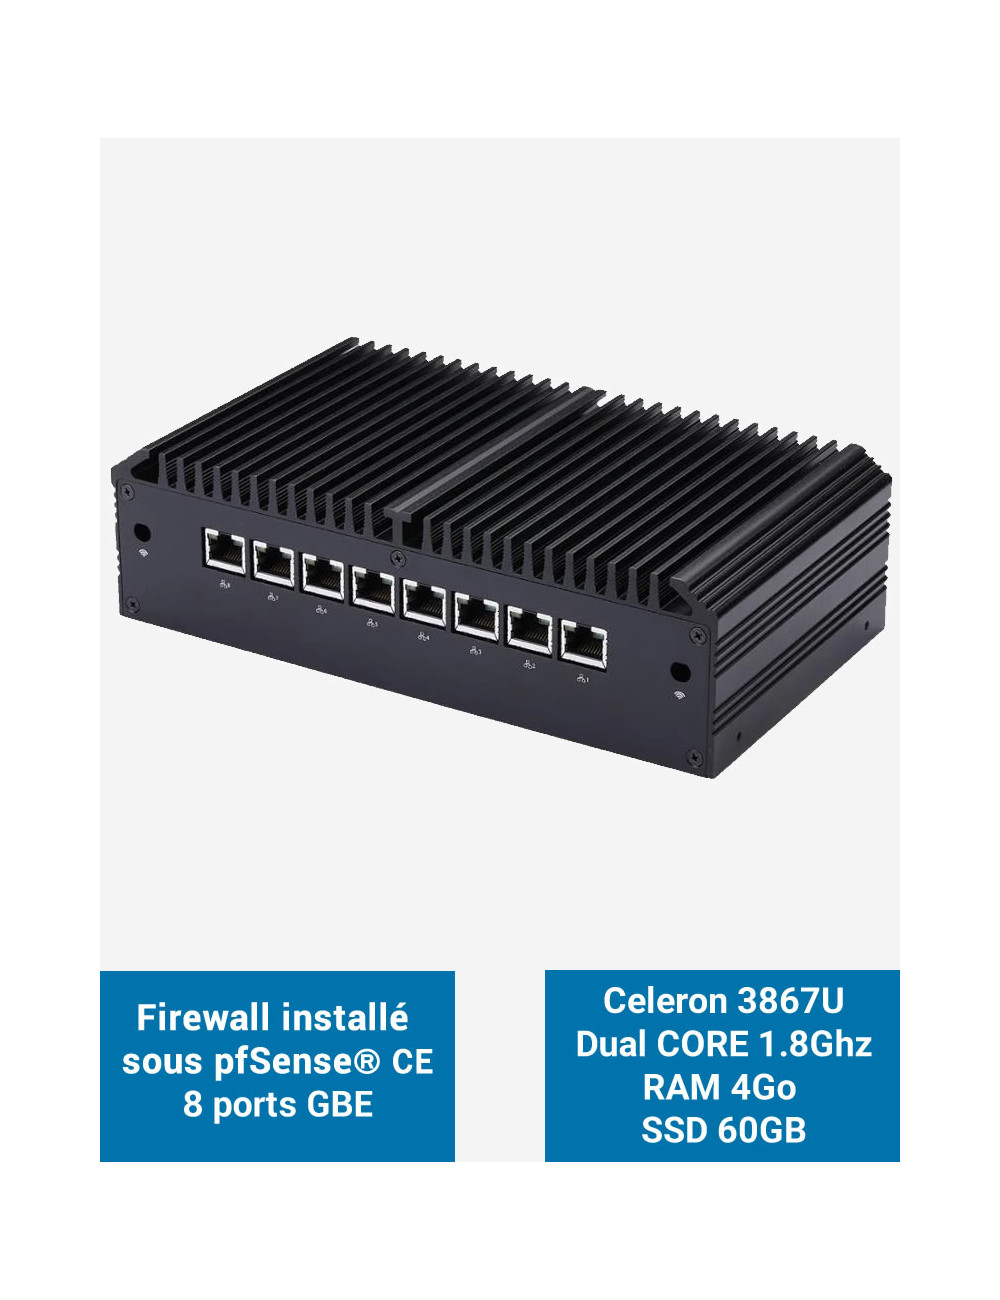 Firewall Q8x Celeron 3867U 8 ports GbE 4GB 60GB